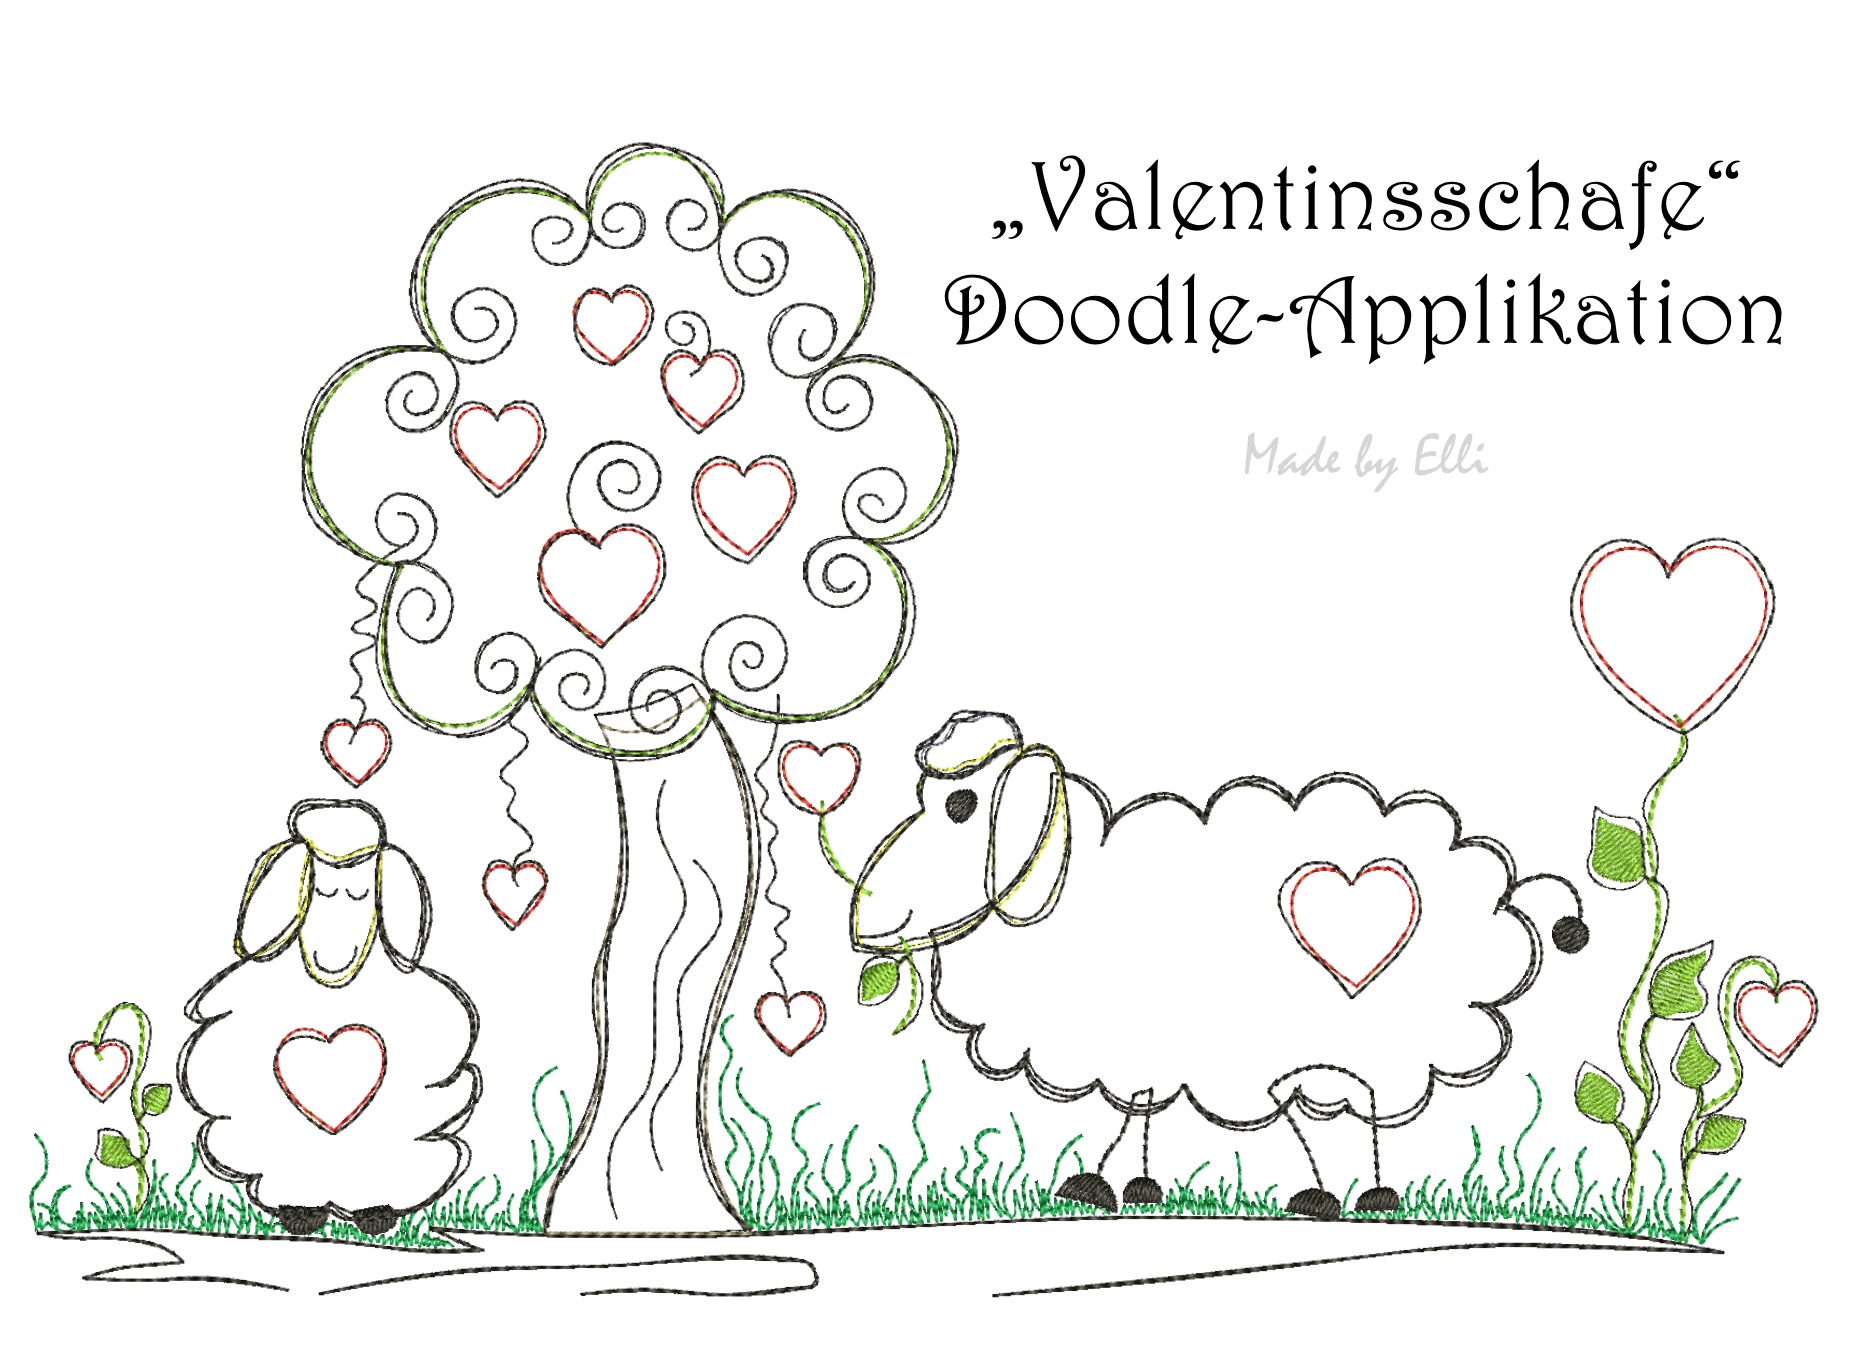 Valentinsschafe - Doodle-Applikation